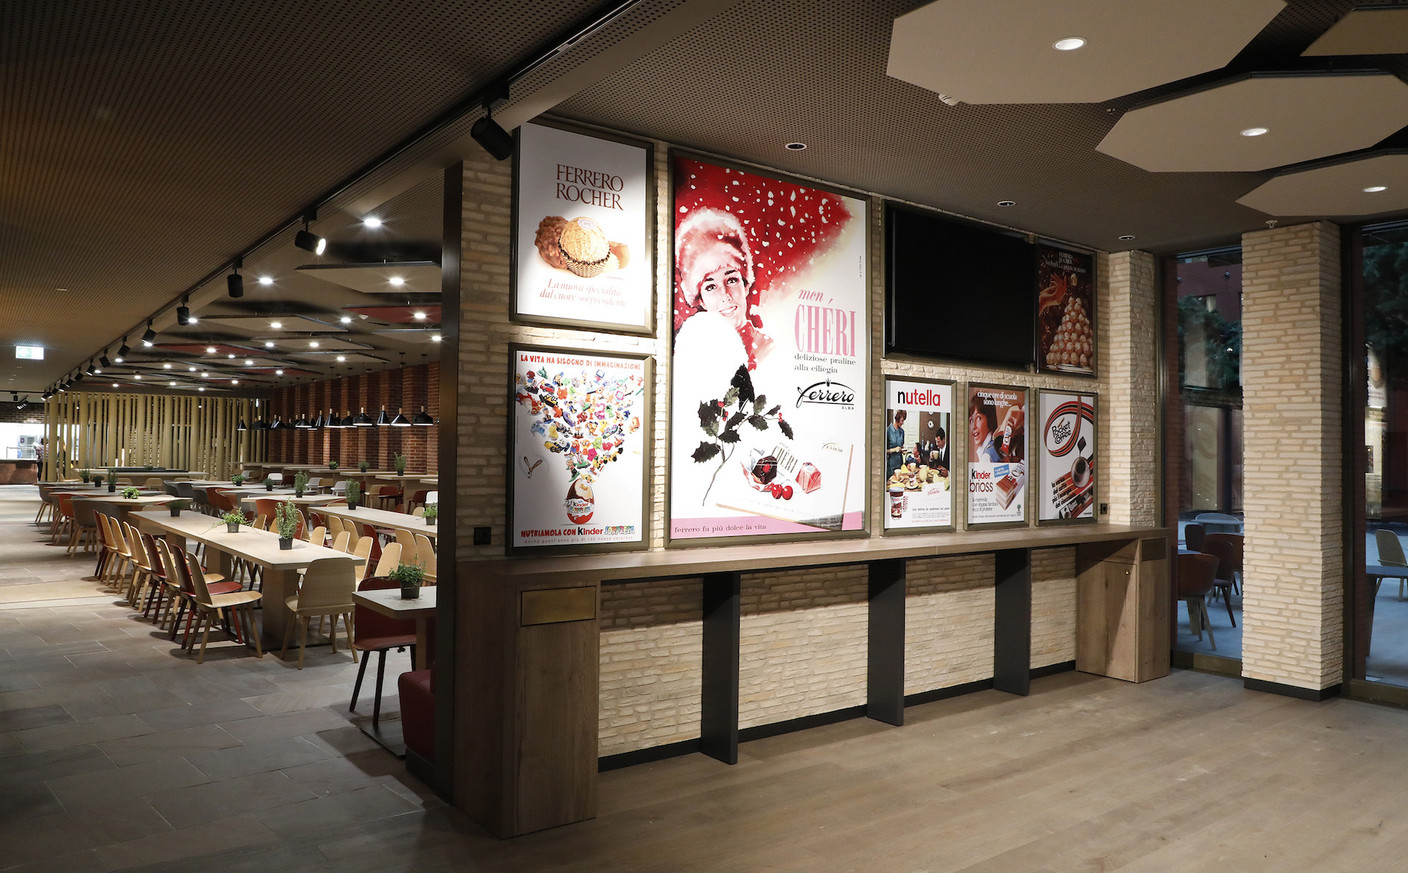 L'histoire de Ferrero est présente dans les espaces communs à travers des affiches historiques des produits. (Photo: Jacques Giral)